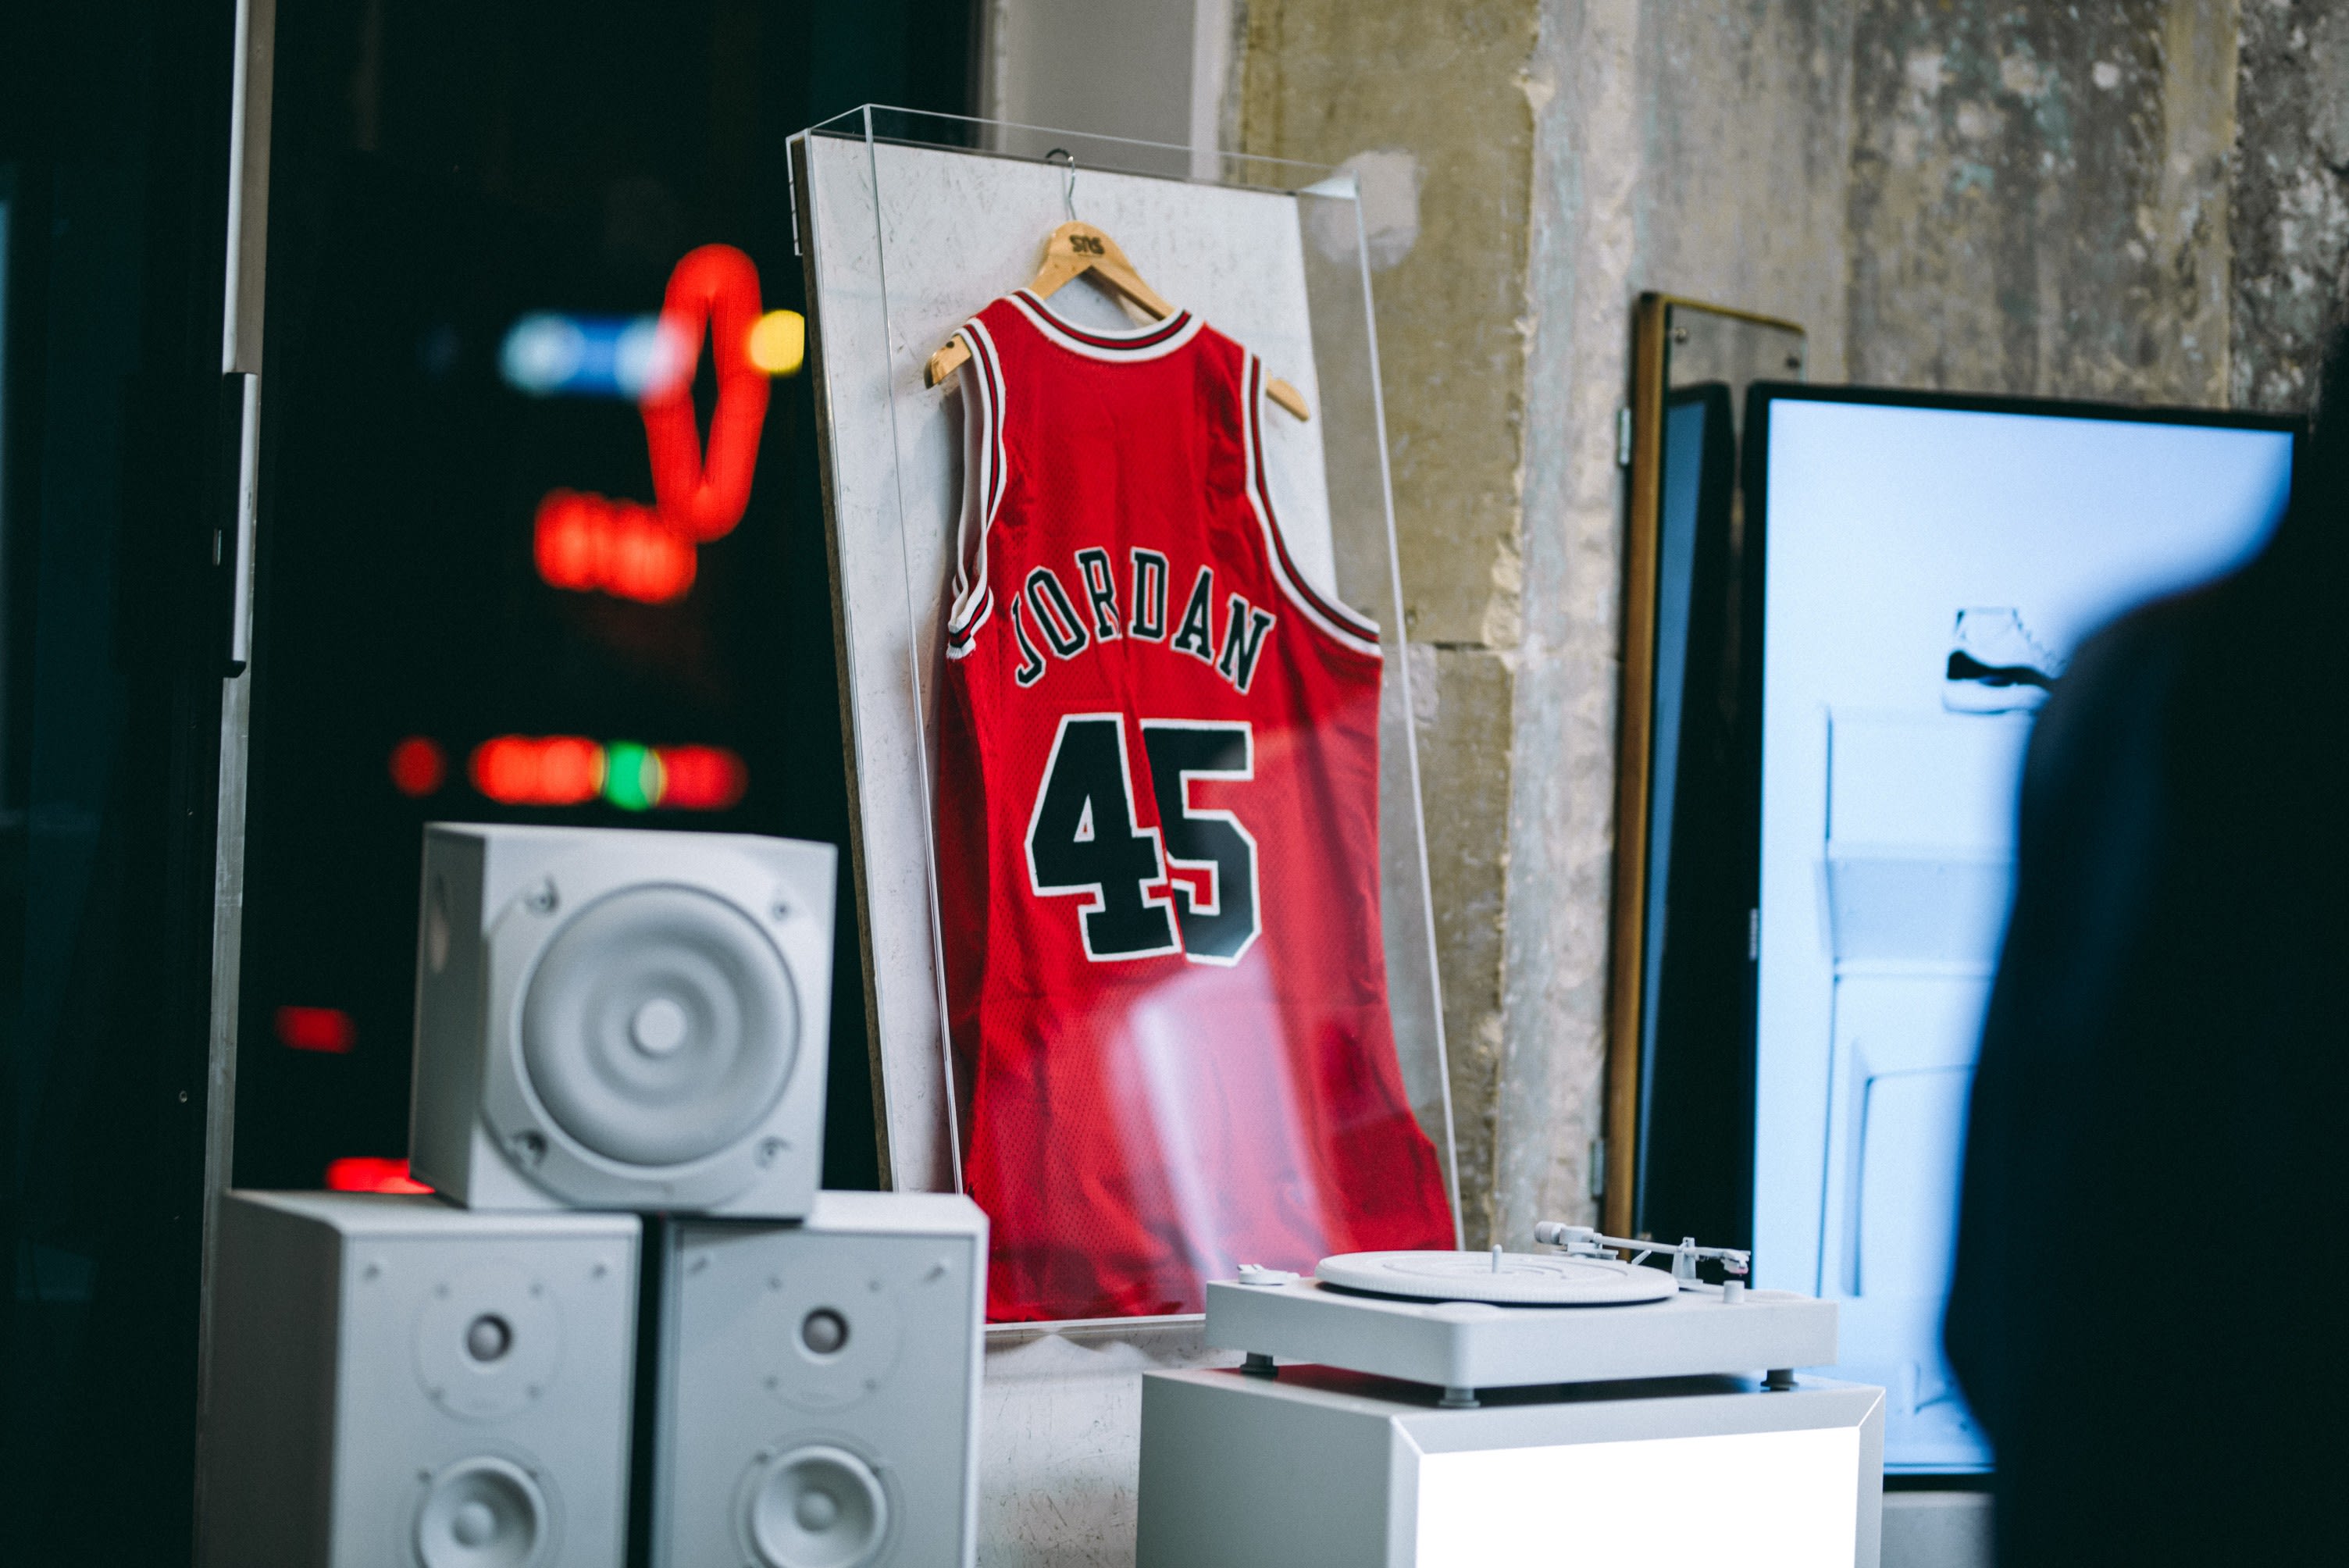 Historic Air Jordan 11s on Display in Exclusive Sneakersnstuff Gallery